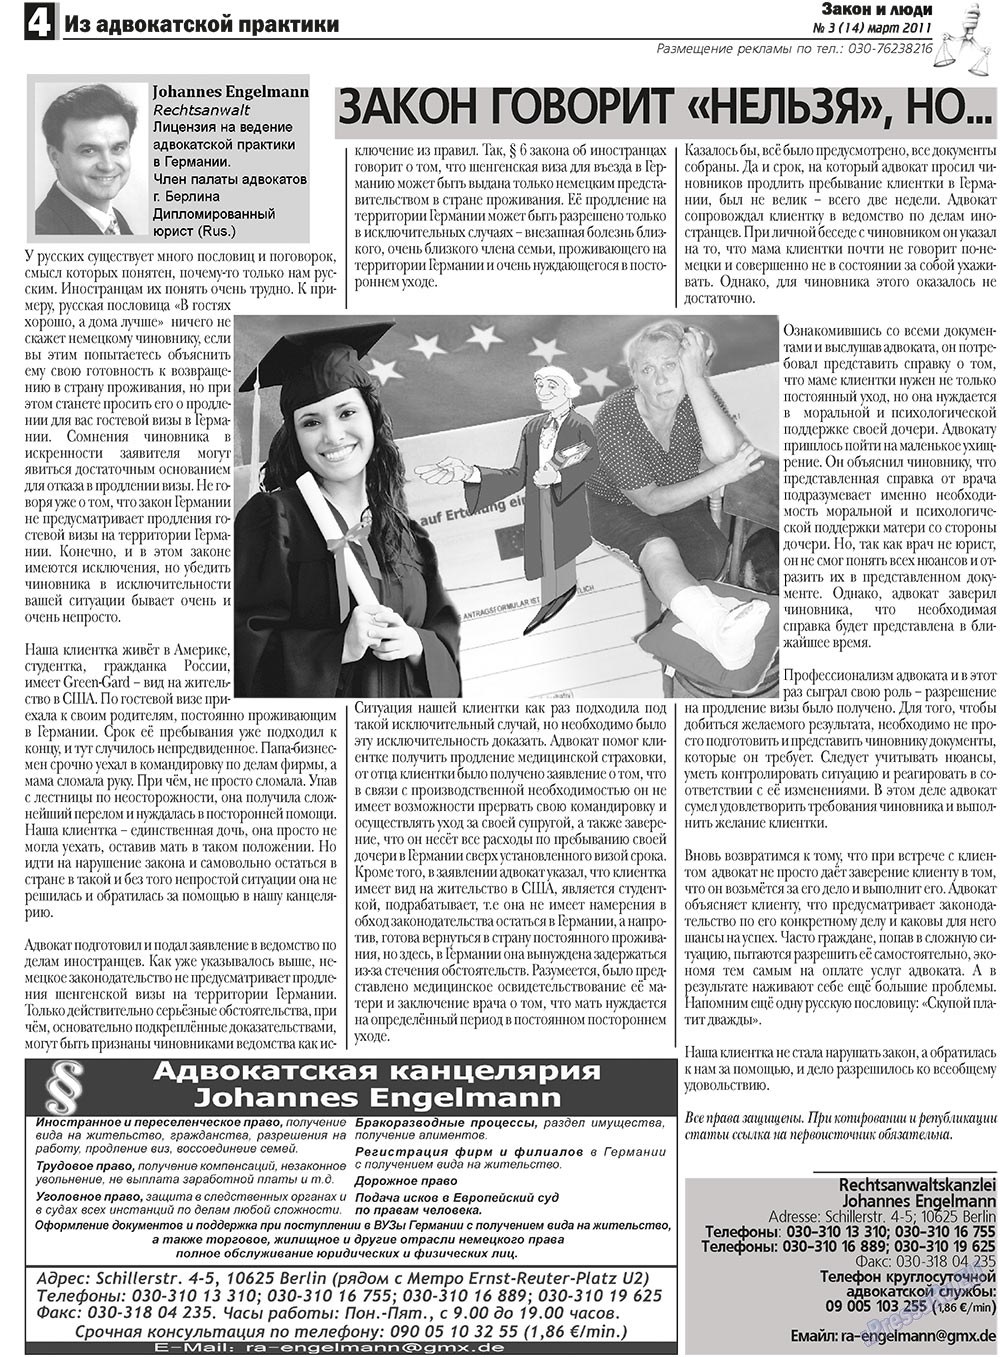 Закон и люди, газета. 2011 №3 стр.4